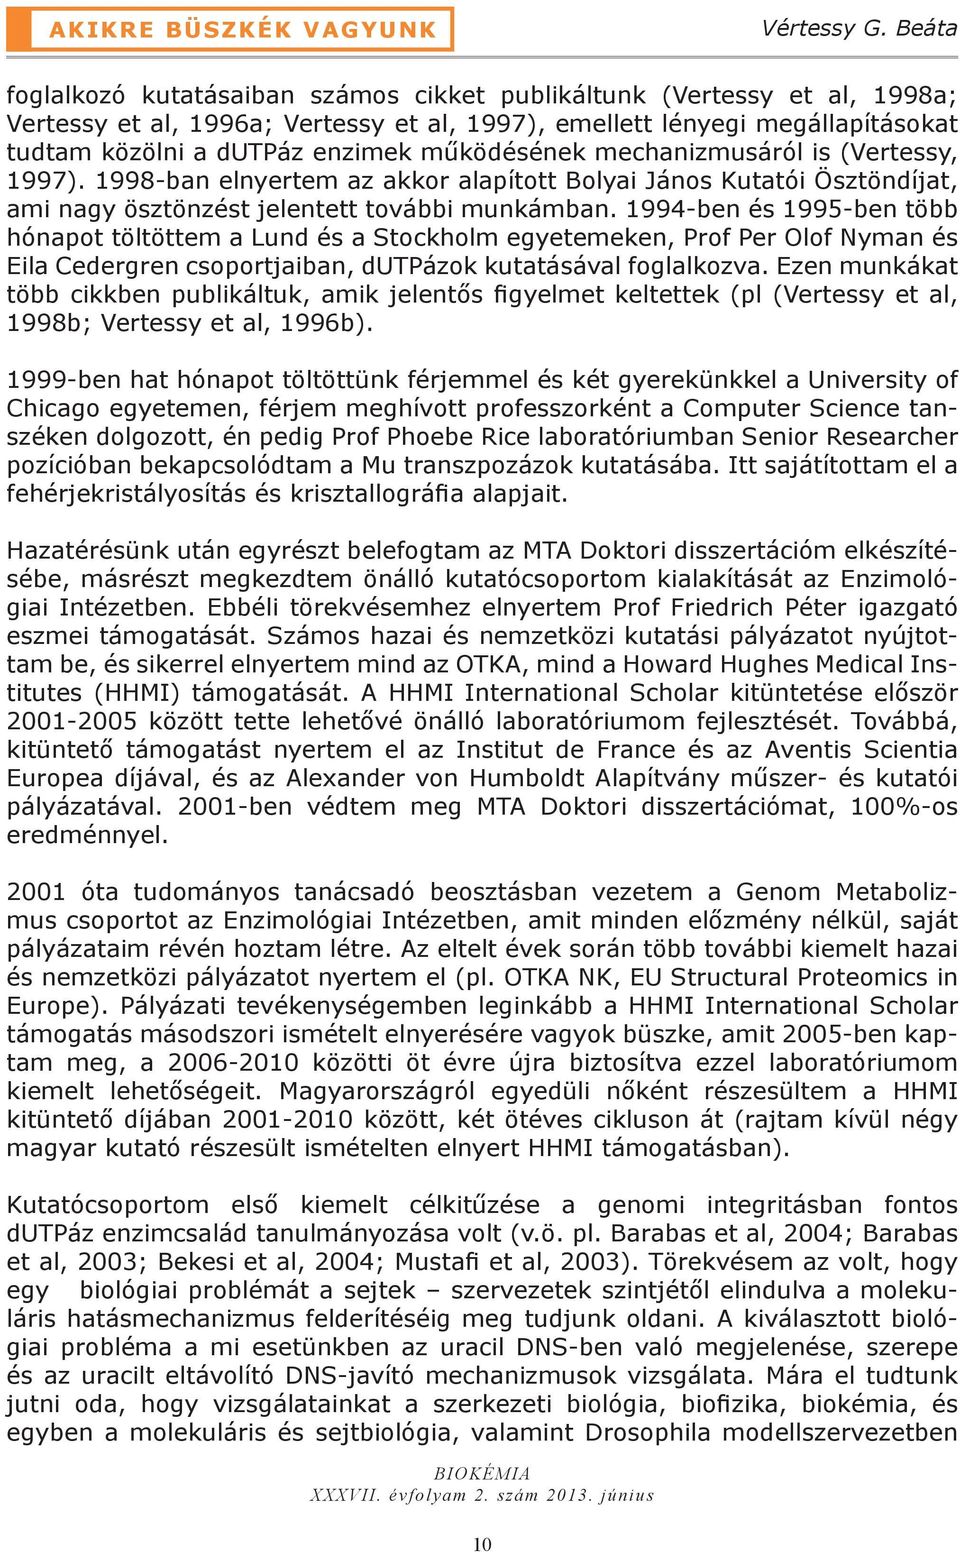 működésének mechanizmusáról is (Vertessy, 1997). 1998-ban elnyertem az akkor alapított Bolyai János Kutatói Ösztöndíjat, ami nagy ösztönzést jelentett további munkámban.